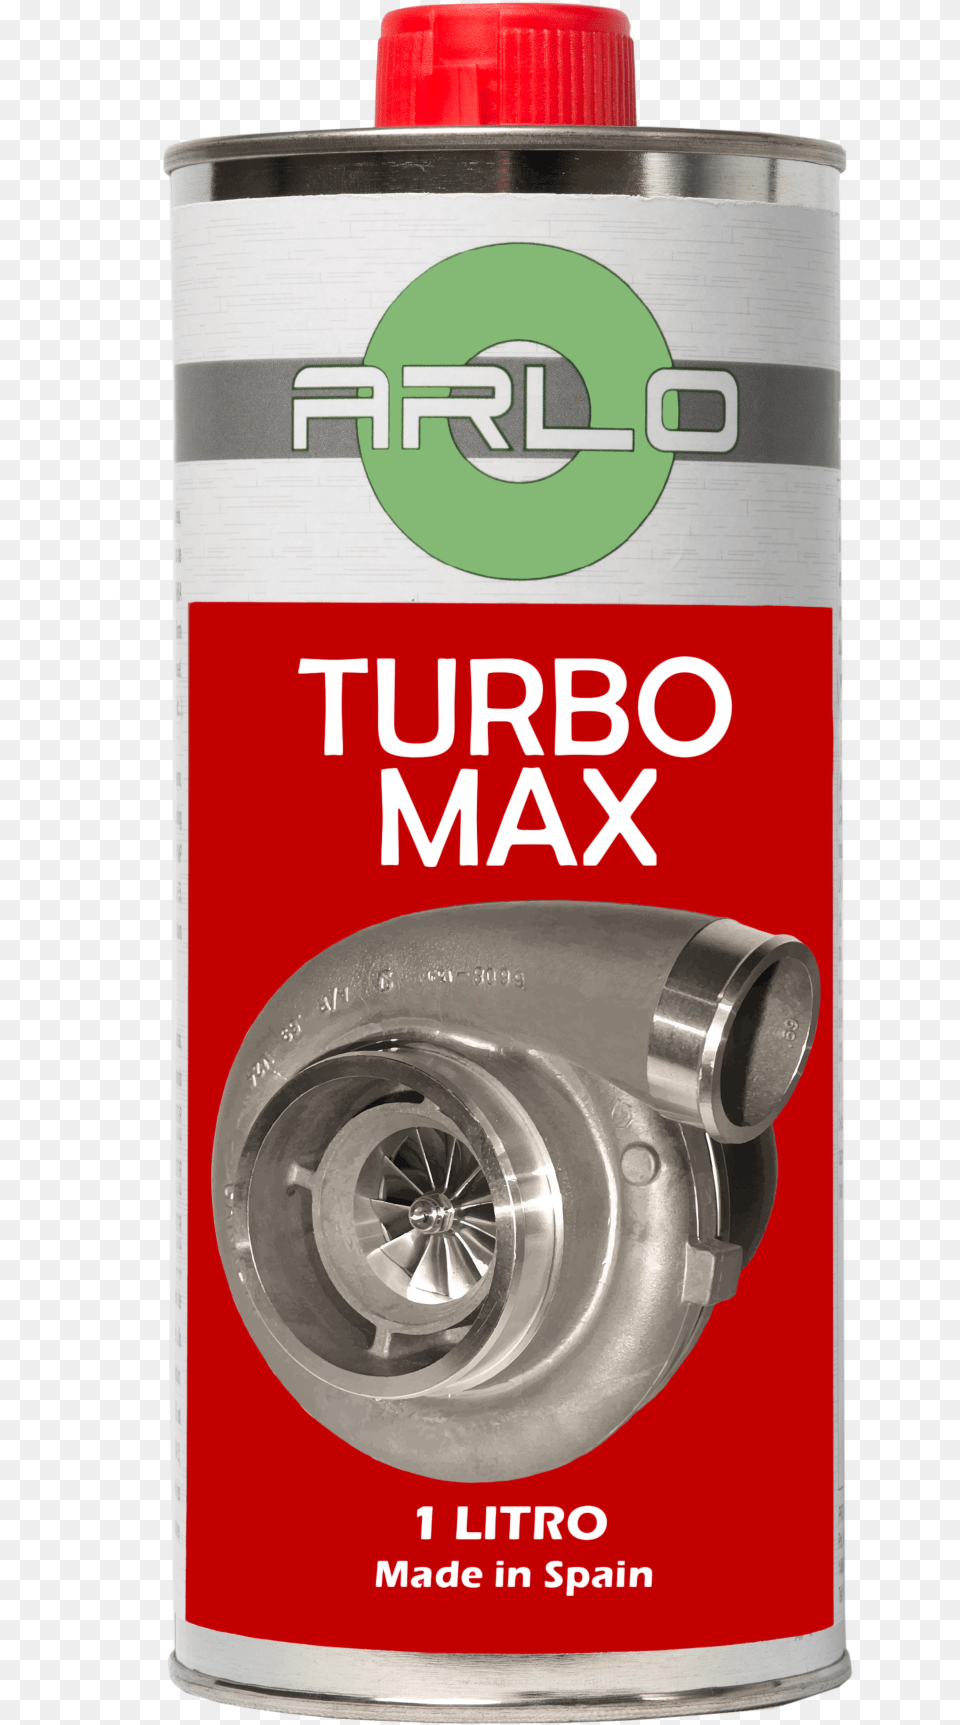 Turbo Max, Tin, Can, Machine, Wheel Free Png